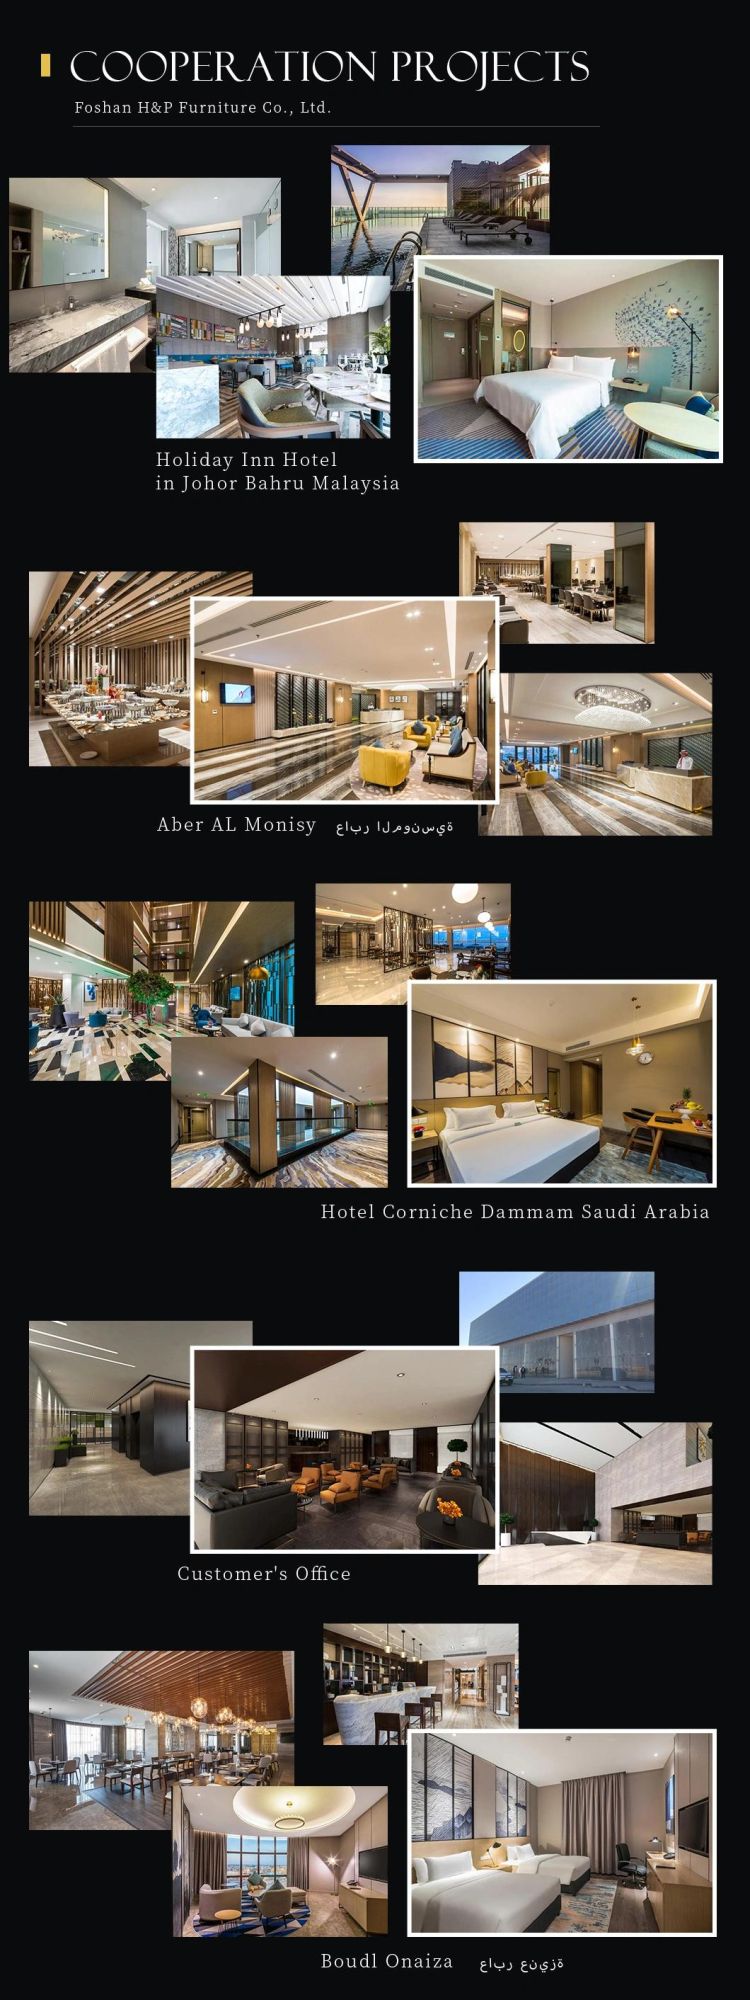 Customised Project Order 3D Design 5 Star Seoul Hotel Bedroom Furniture Set